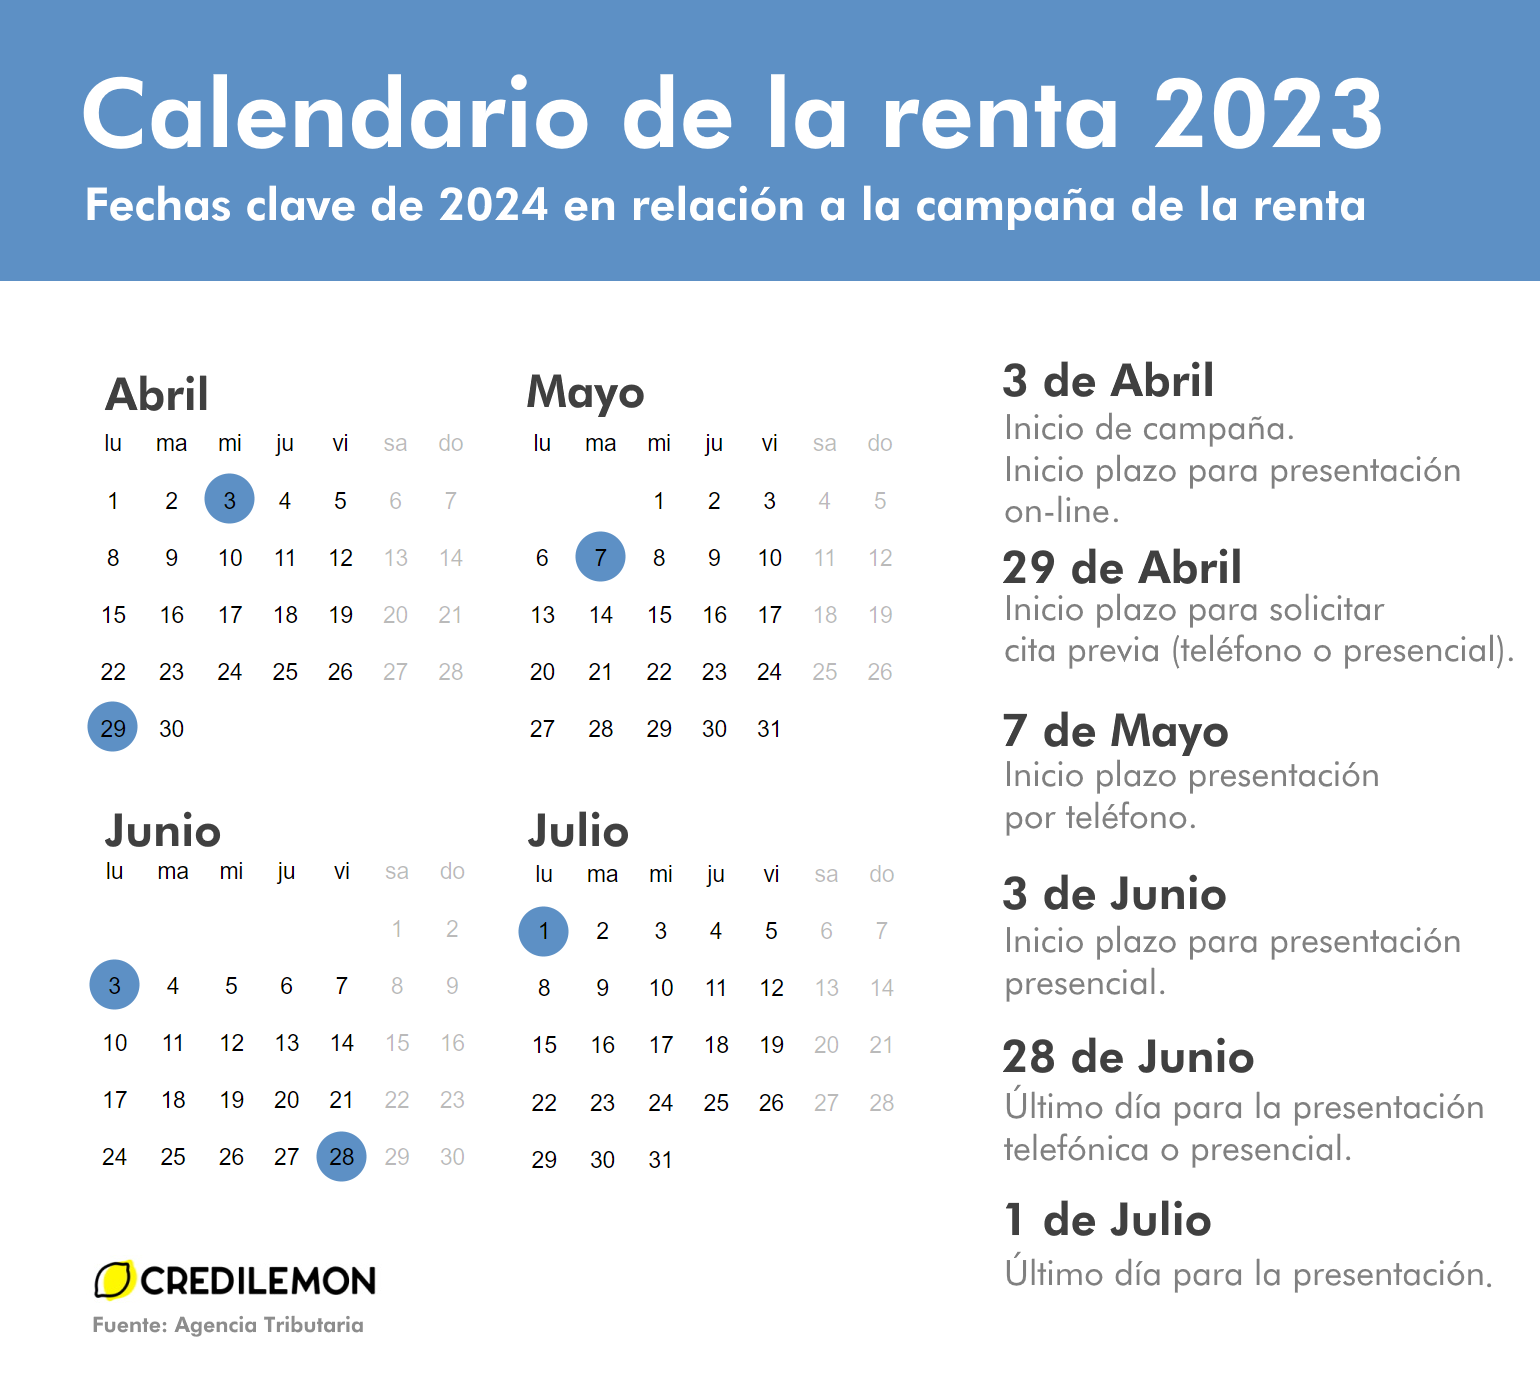 Calendario renta 2023 con fechas destacadas